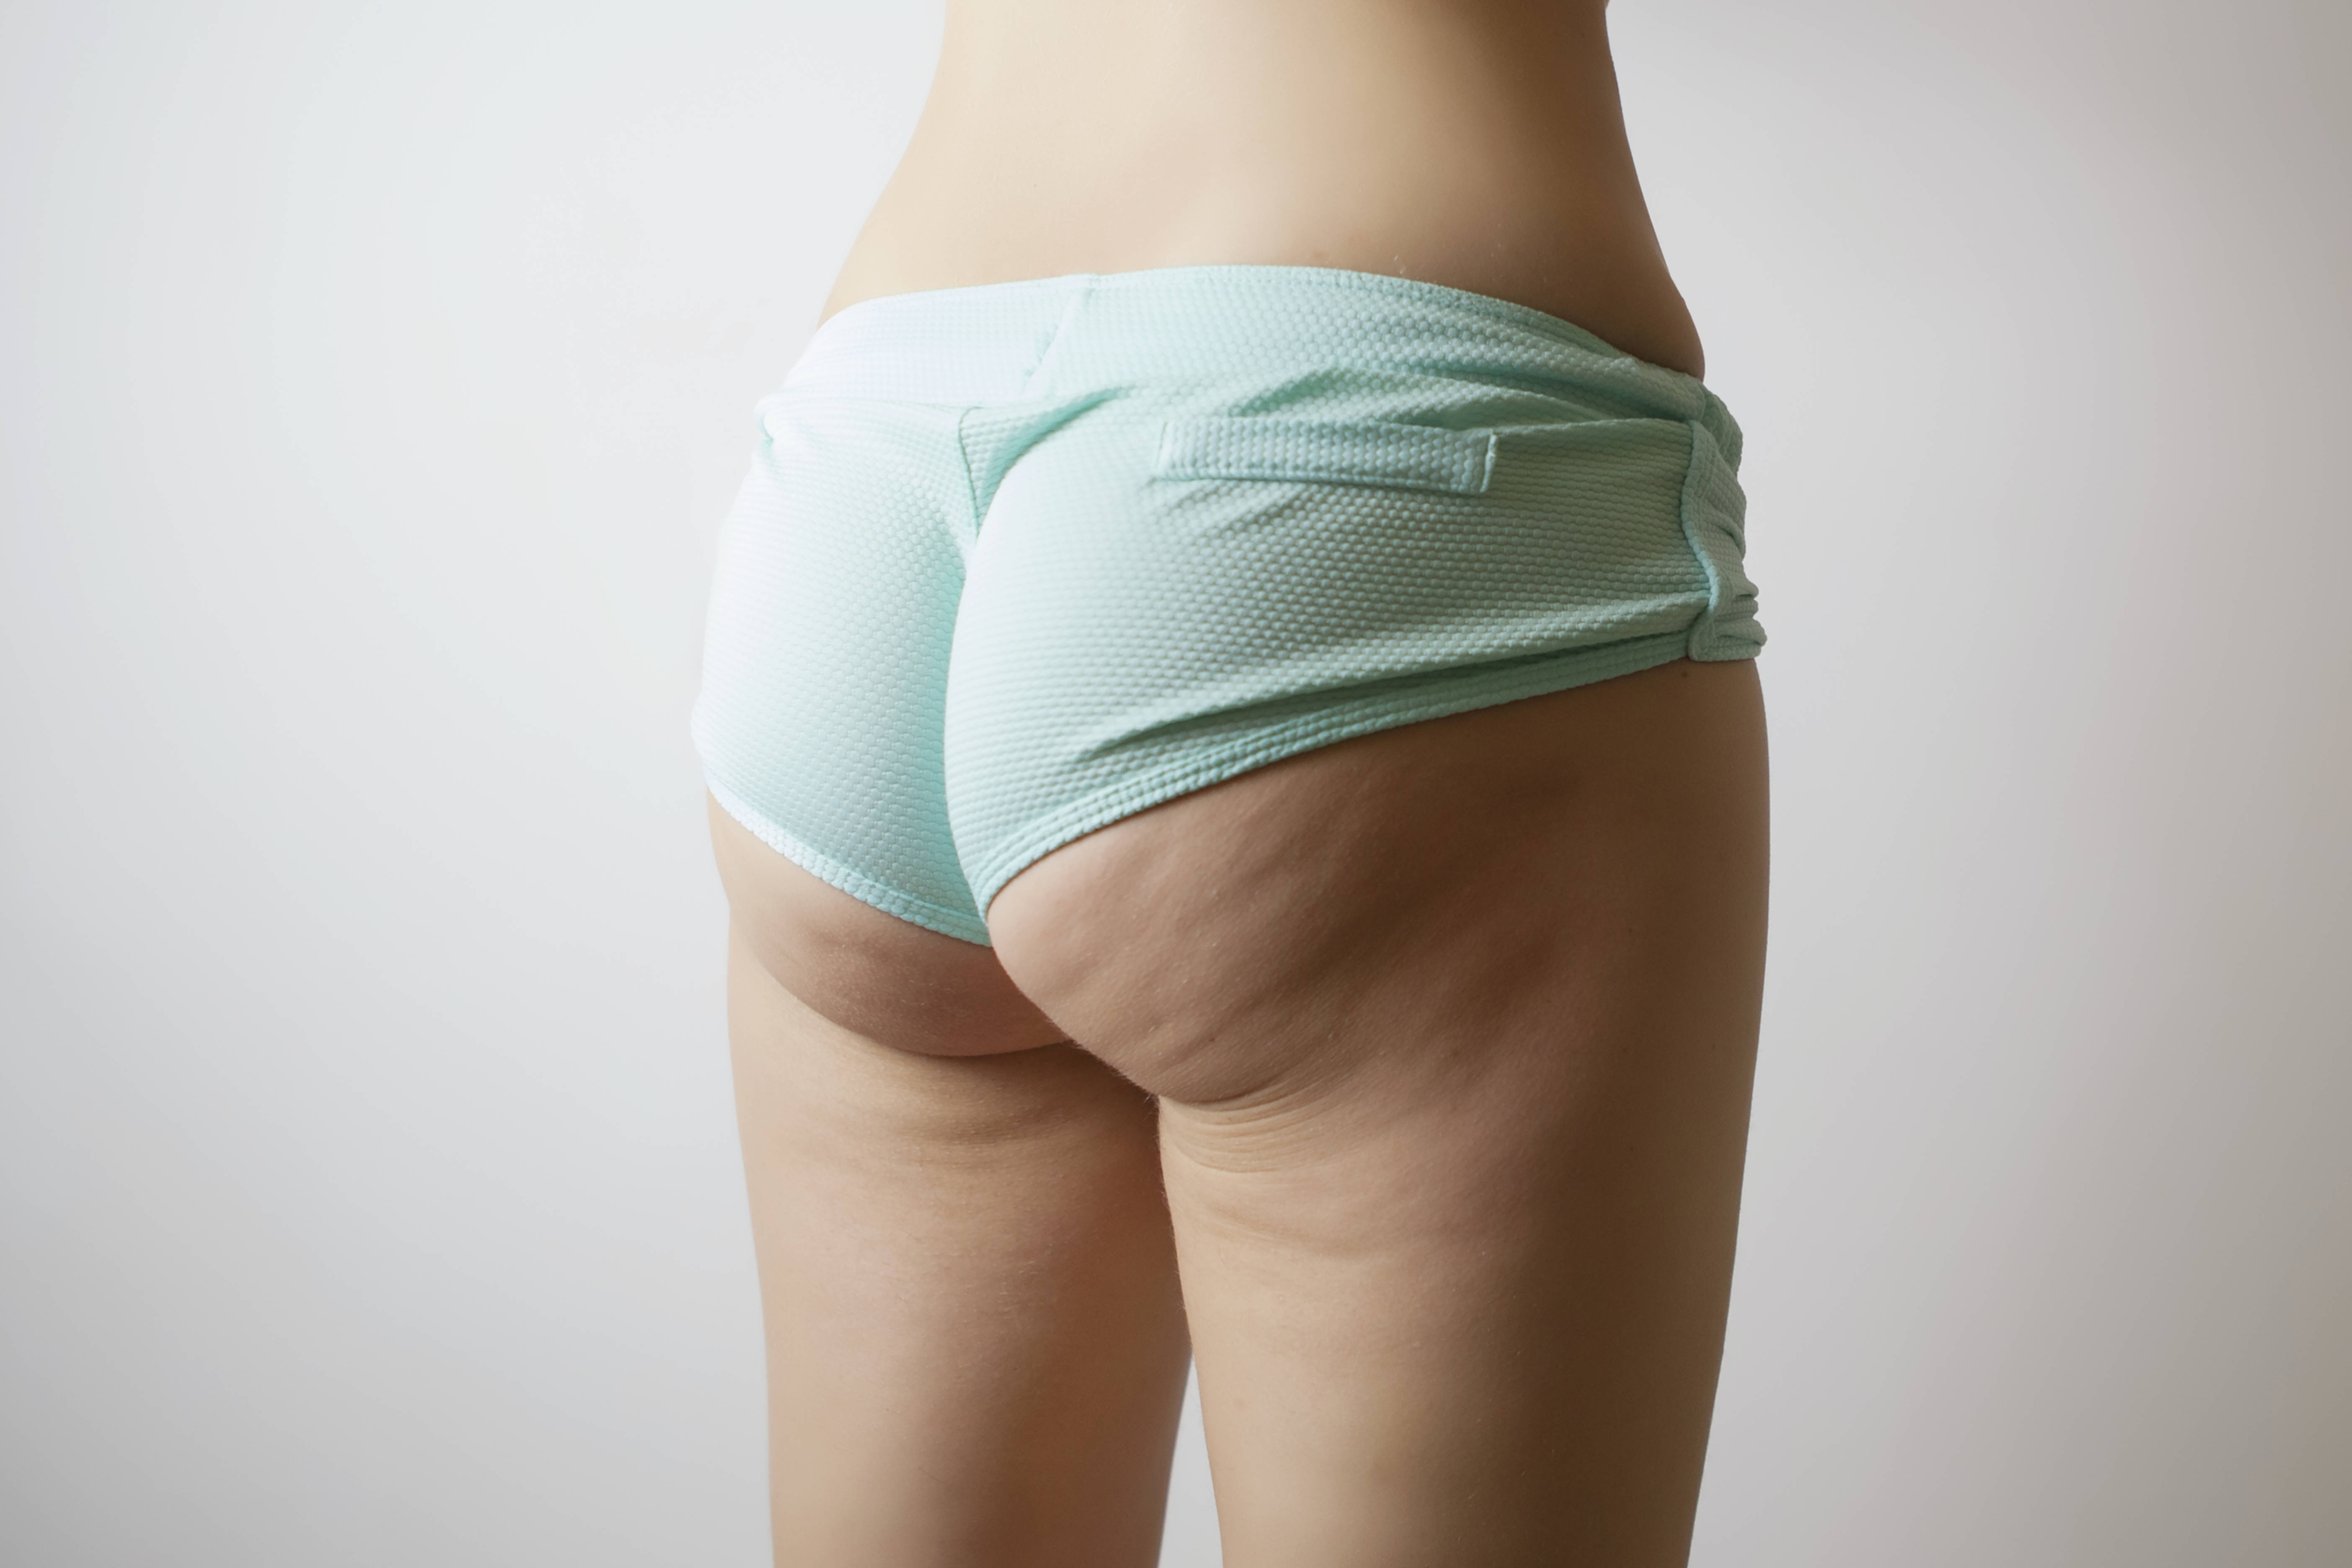 Before-Liposculprture - Brazilian buttock